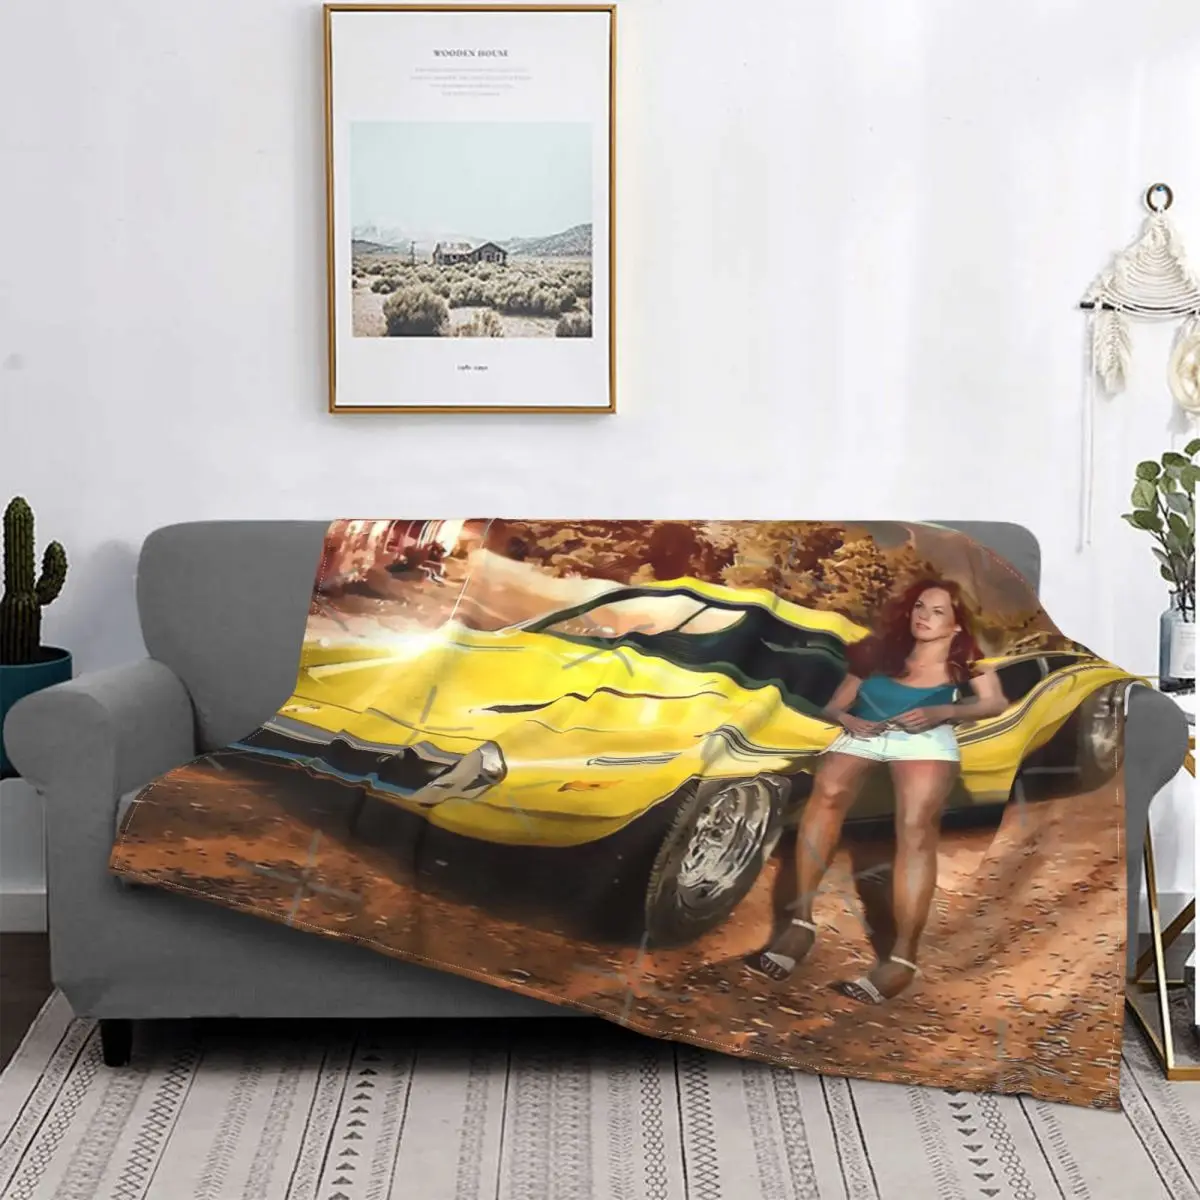 

Покрывало Daisy Duke покрывало для кровати плед диван муслиновое плед одеяло для пикника пляжное полотенце роскошное